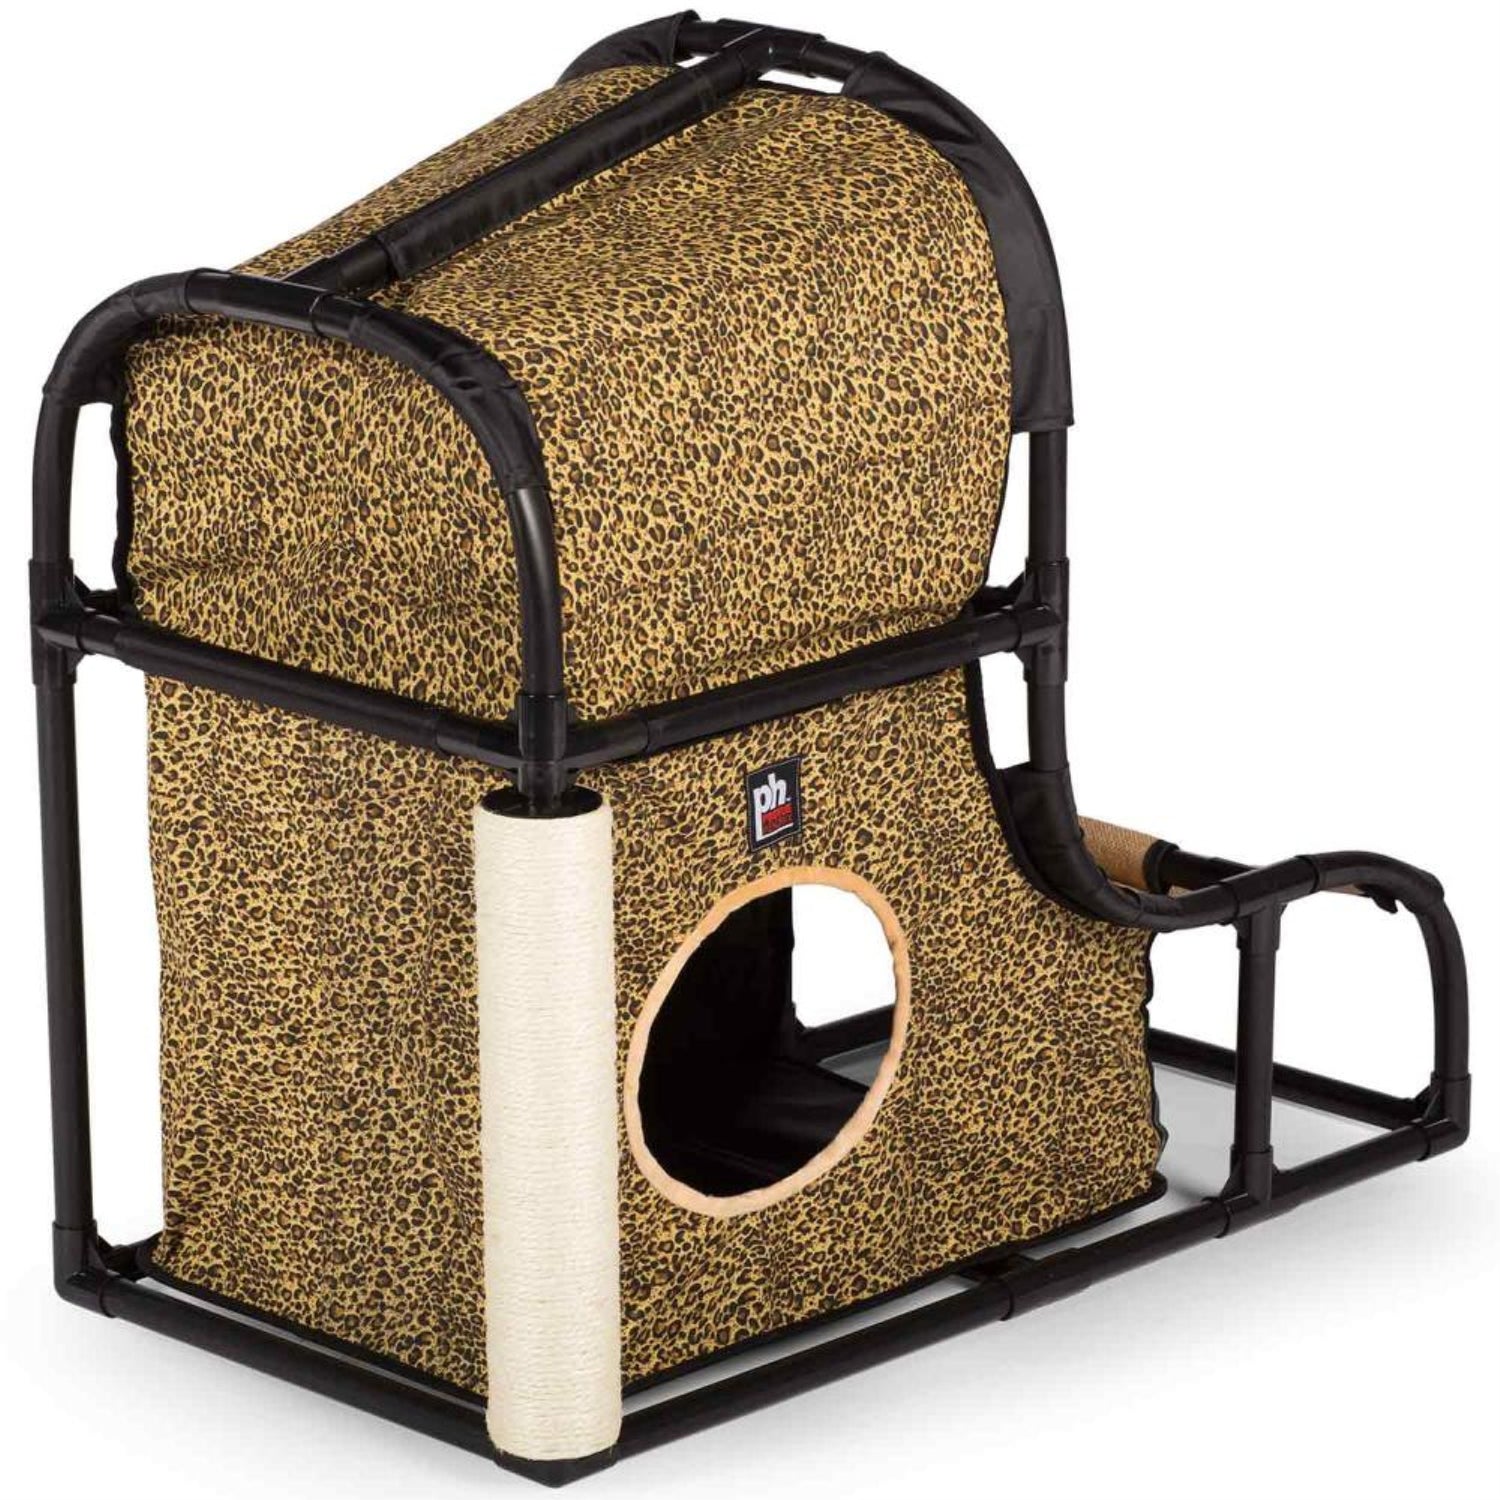 Prevue Pet Products 27" Catville Loft Cat Furniture, Leopard